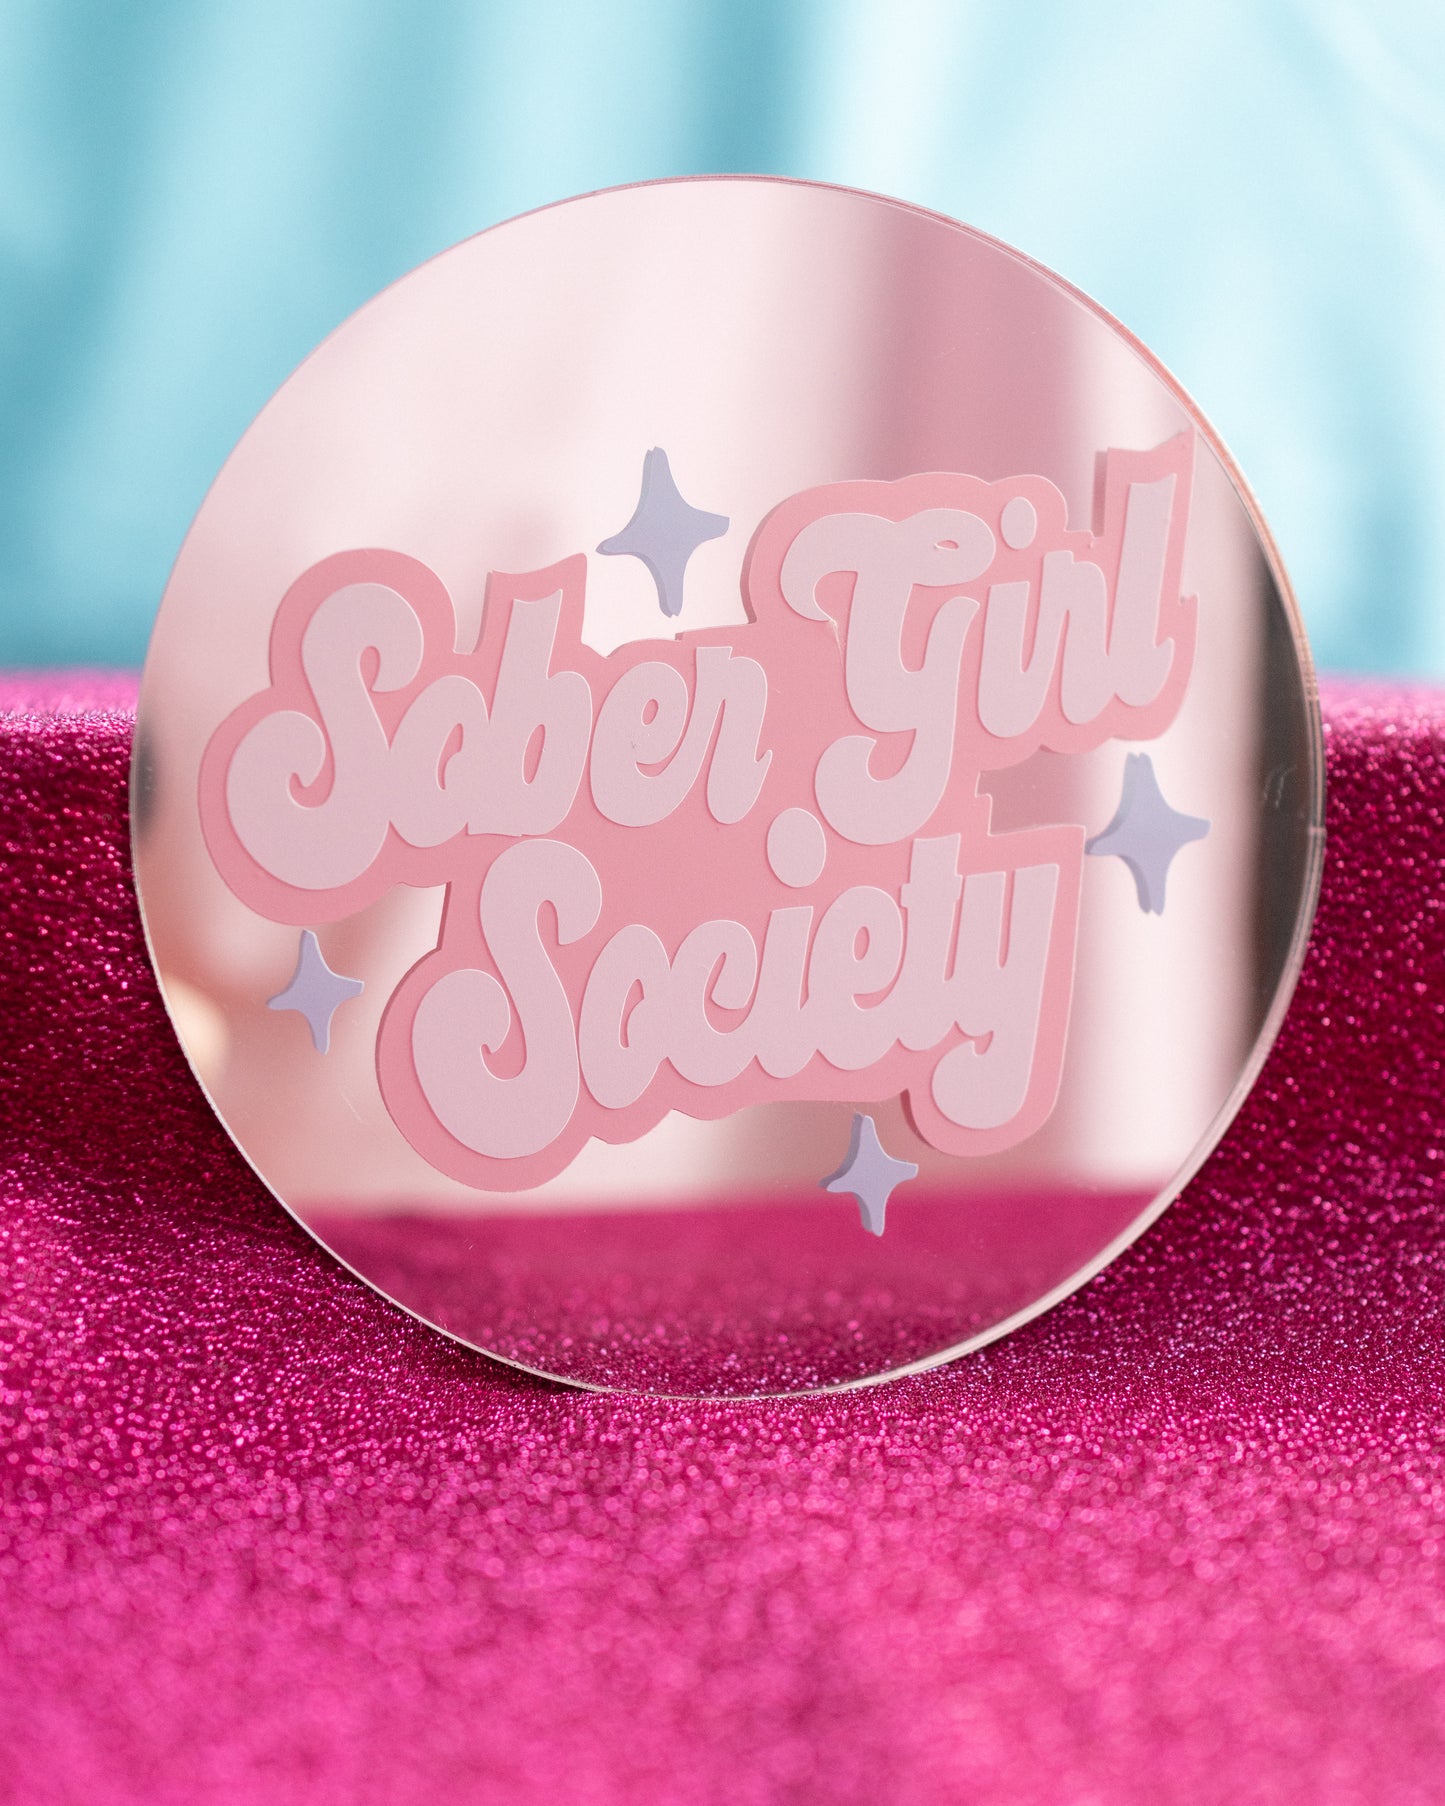 Sober Girl Society x Printed Weird - Sober Girl Mini Mirror